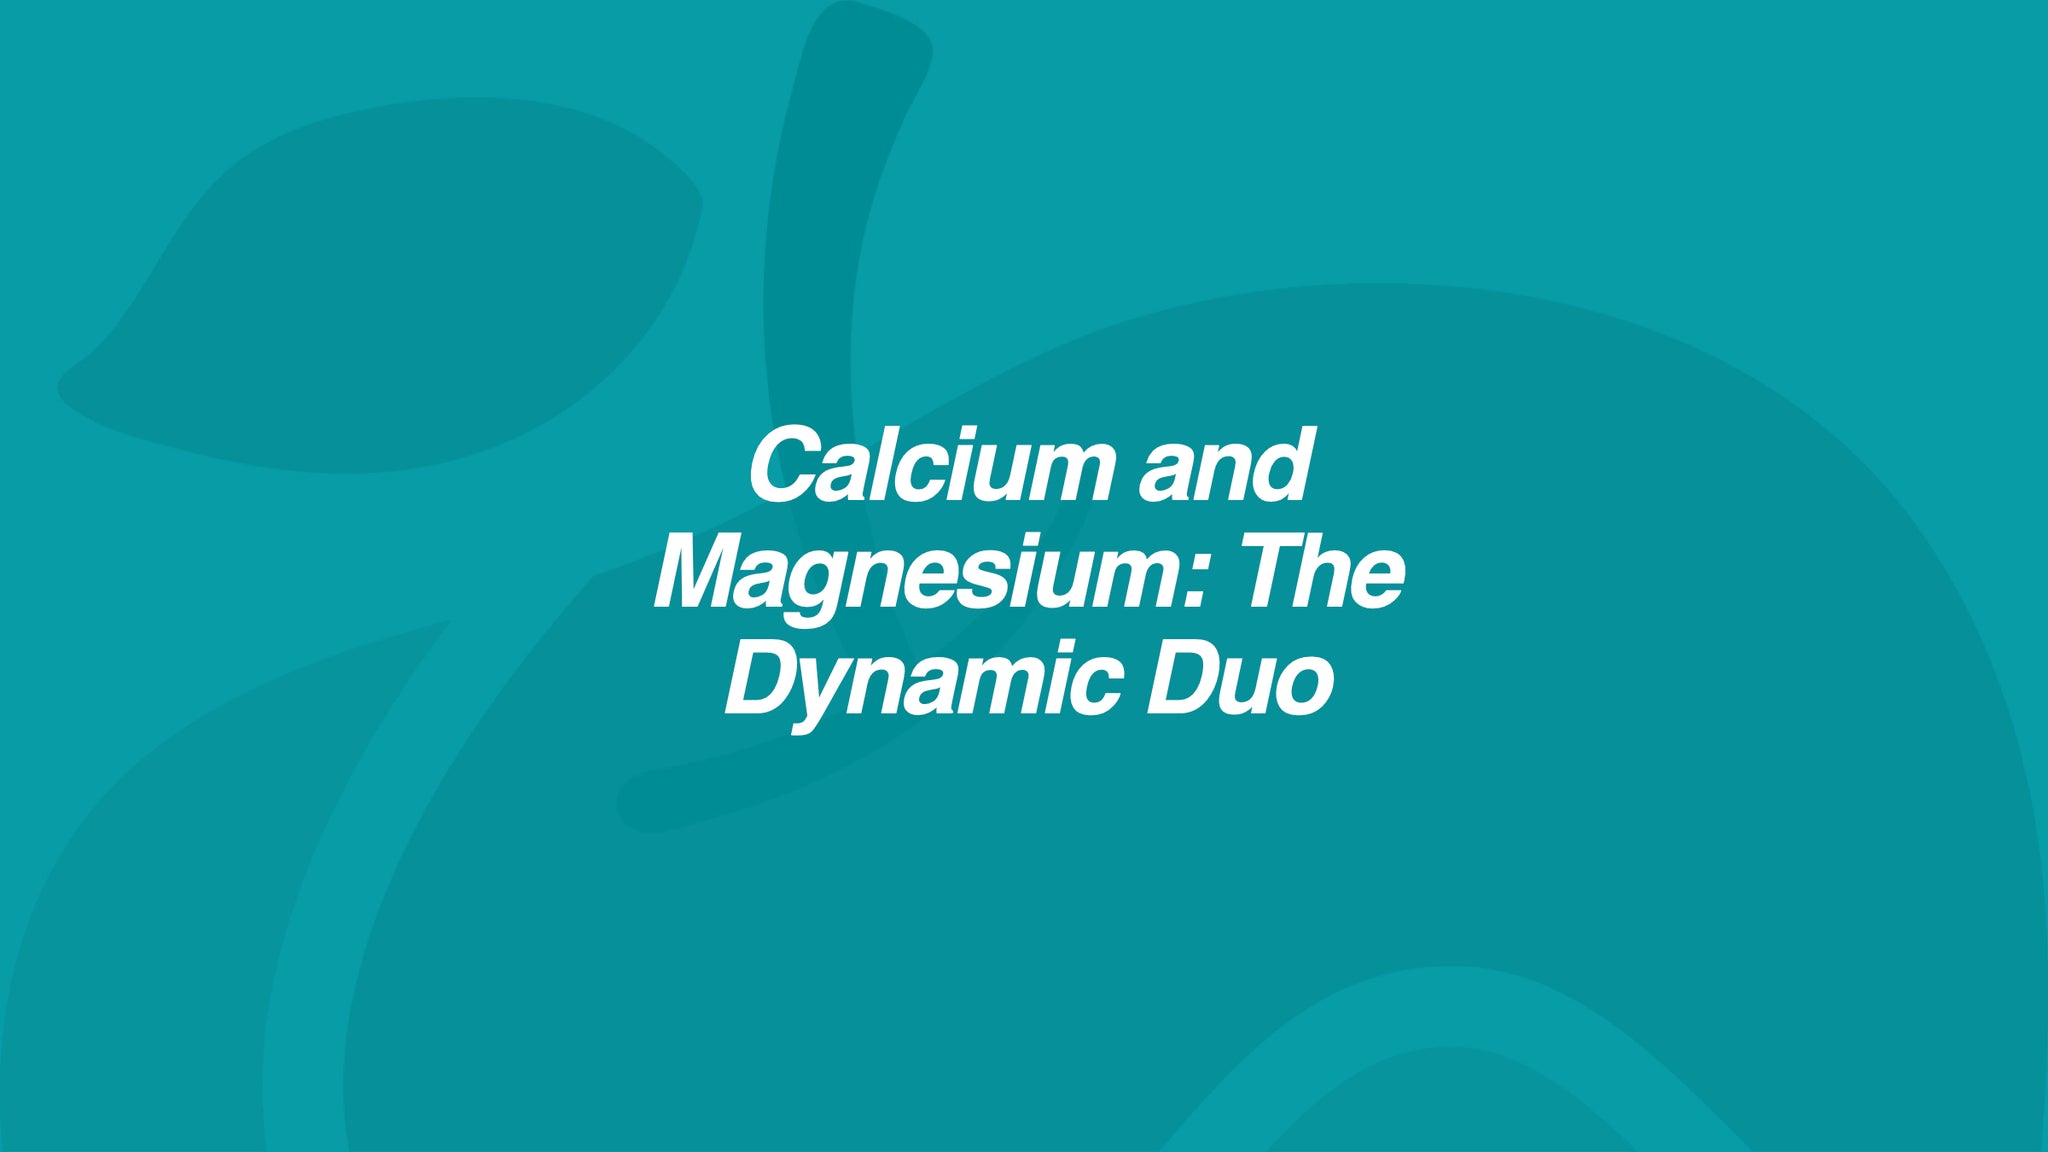 Calcium and Magnesium: The Dynamic Duo